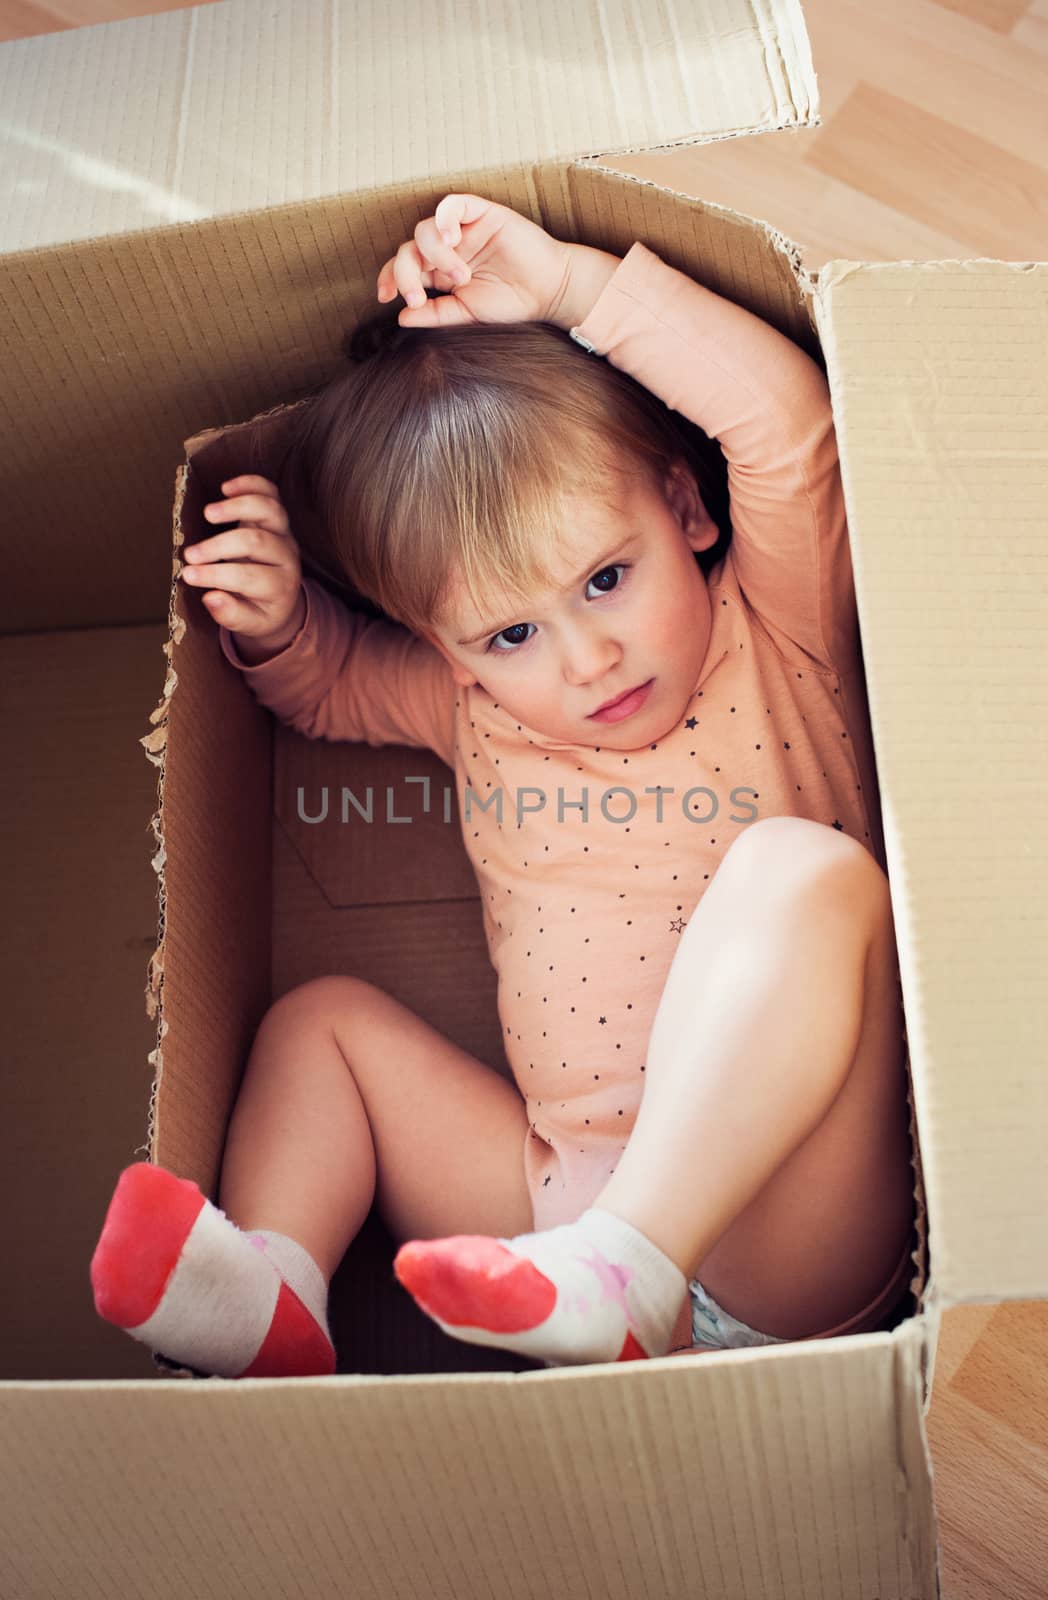 Baby toddler in a carton box having fun